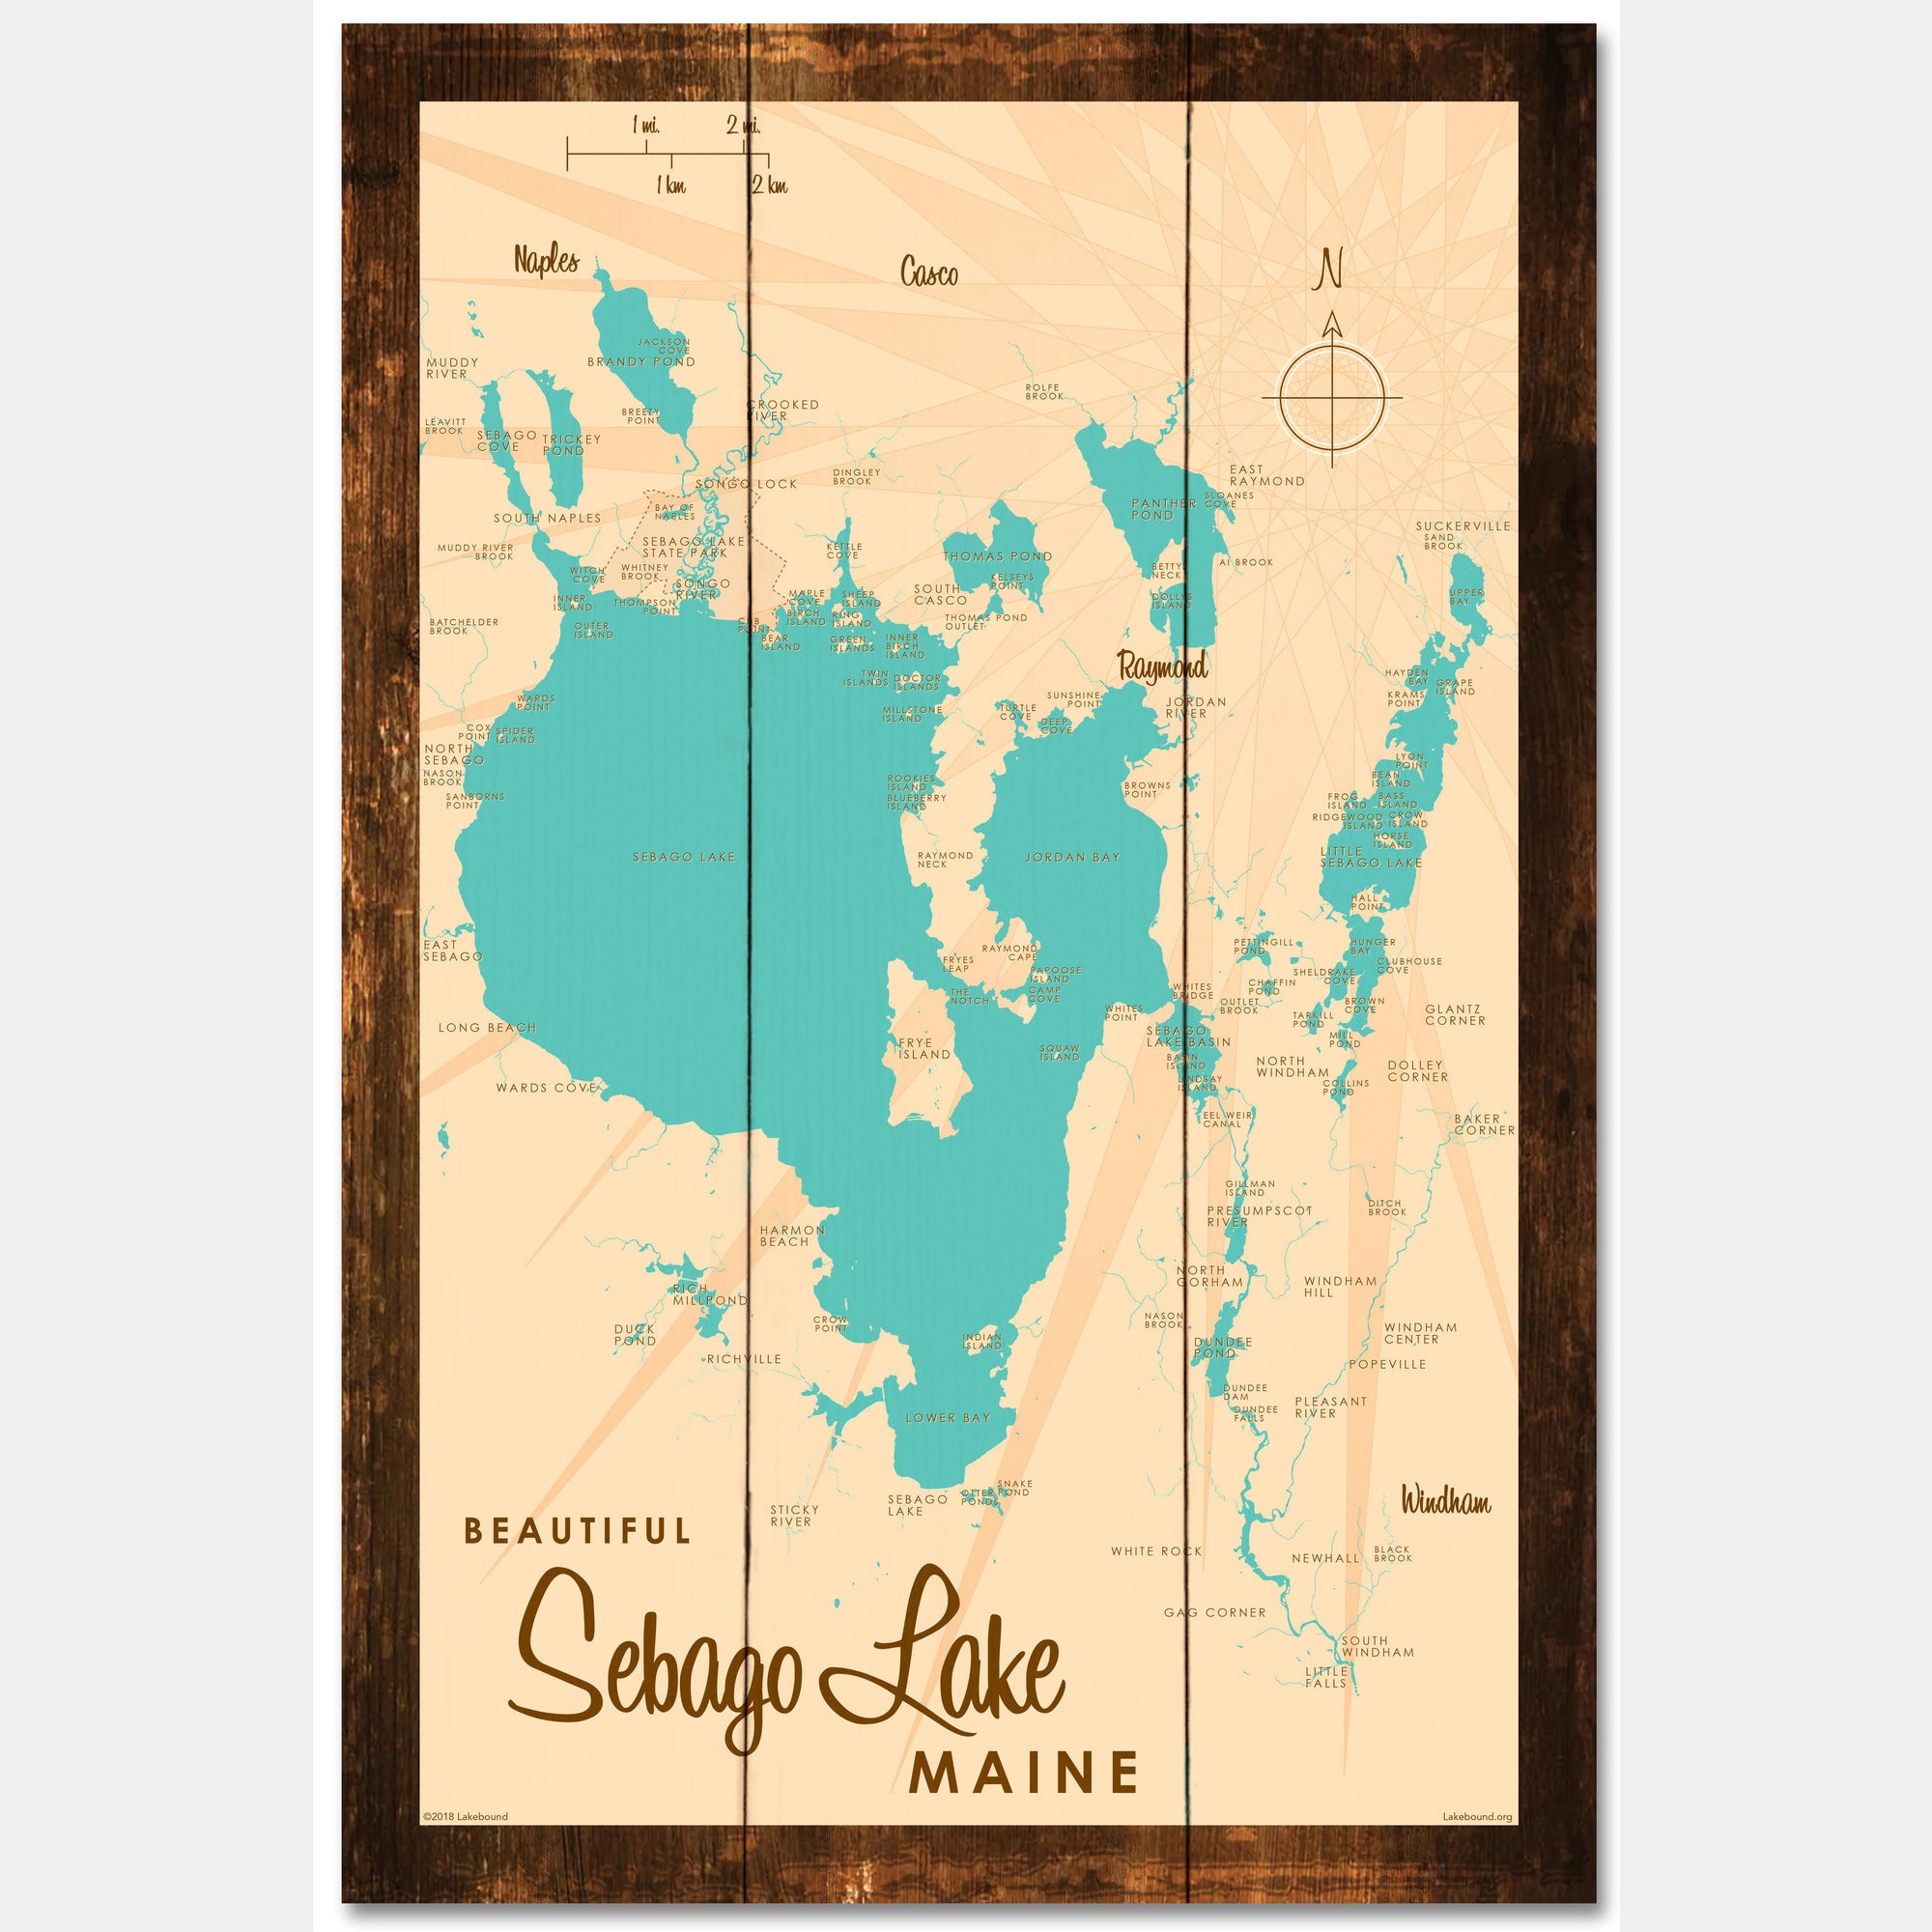 Sebago Lake Maine, Rustic Wood Sign Map Art